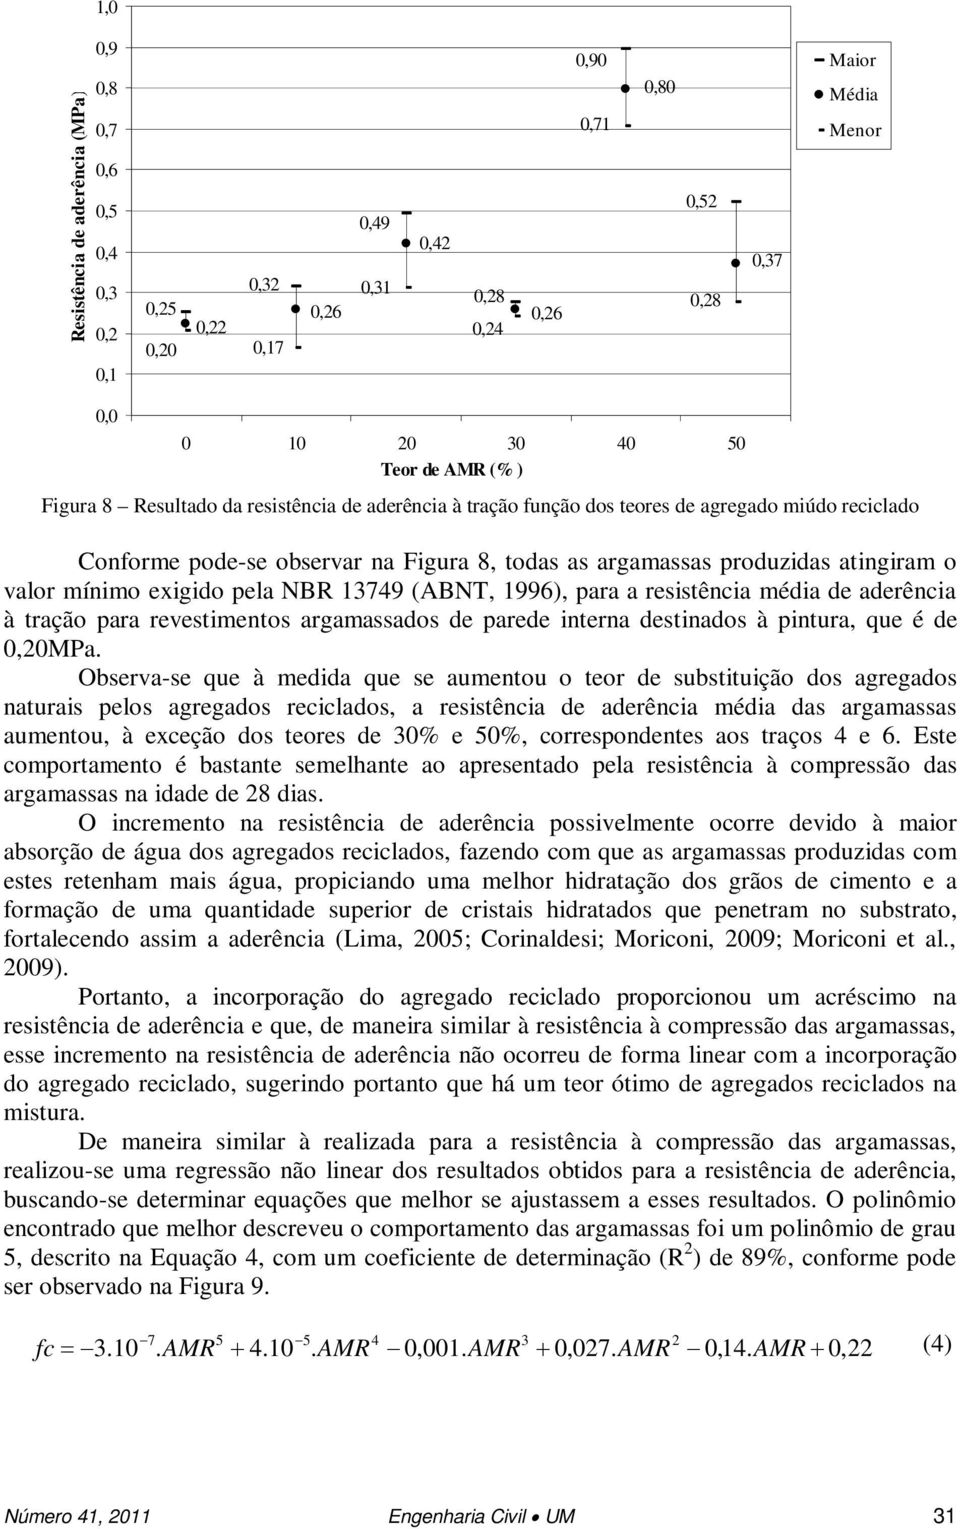 mínimo exigido pela NBR 13749 (ABNT, 1996), para a resistência média de aderência à tração para revestimentos argamassados de parede interna destinados à pintura, que é de 0,0MPa.